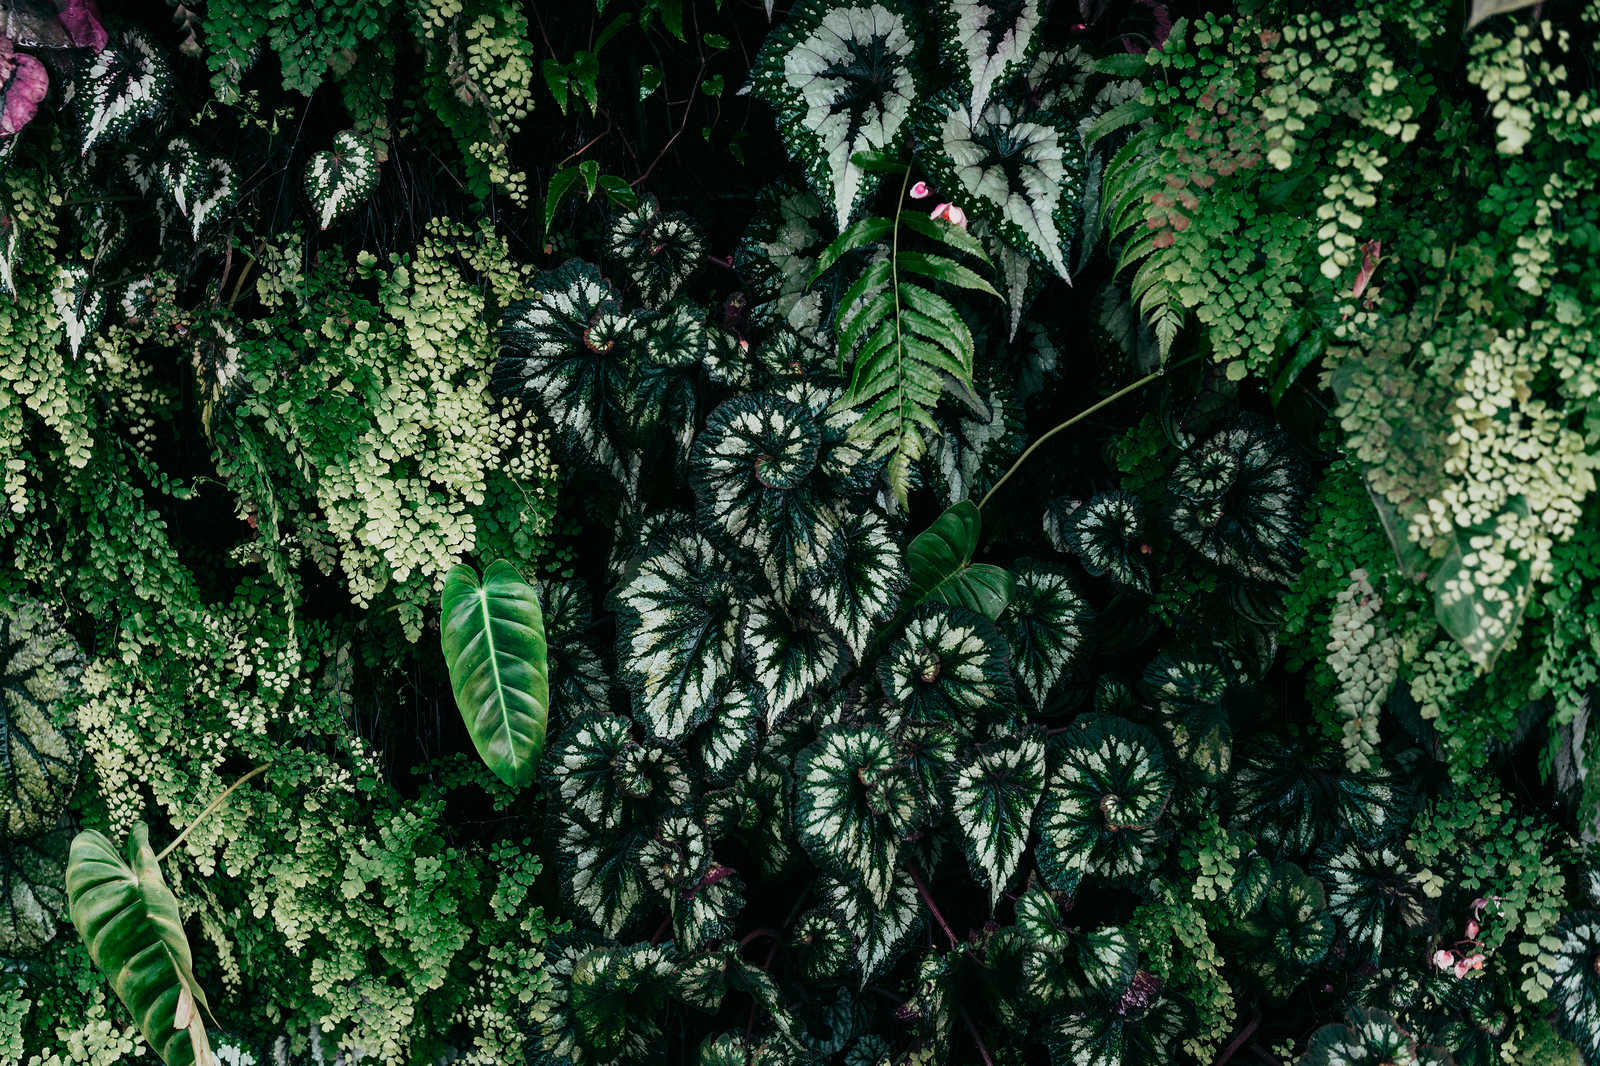             Deep Green 2 - Leinwandbild Blätterdickicht, Farne & Hängepflanzen – 1,20 m x 0,80 m
        